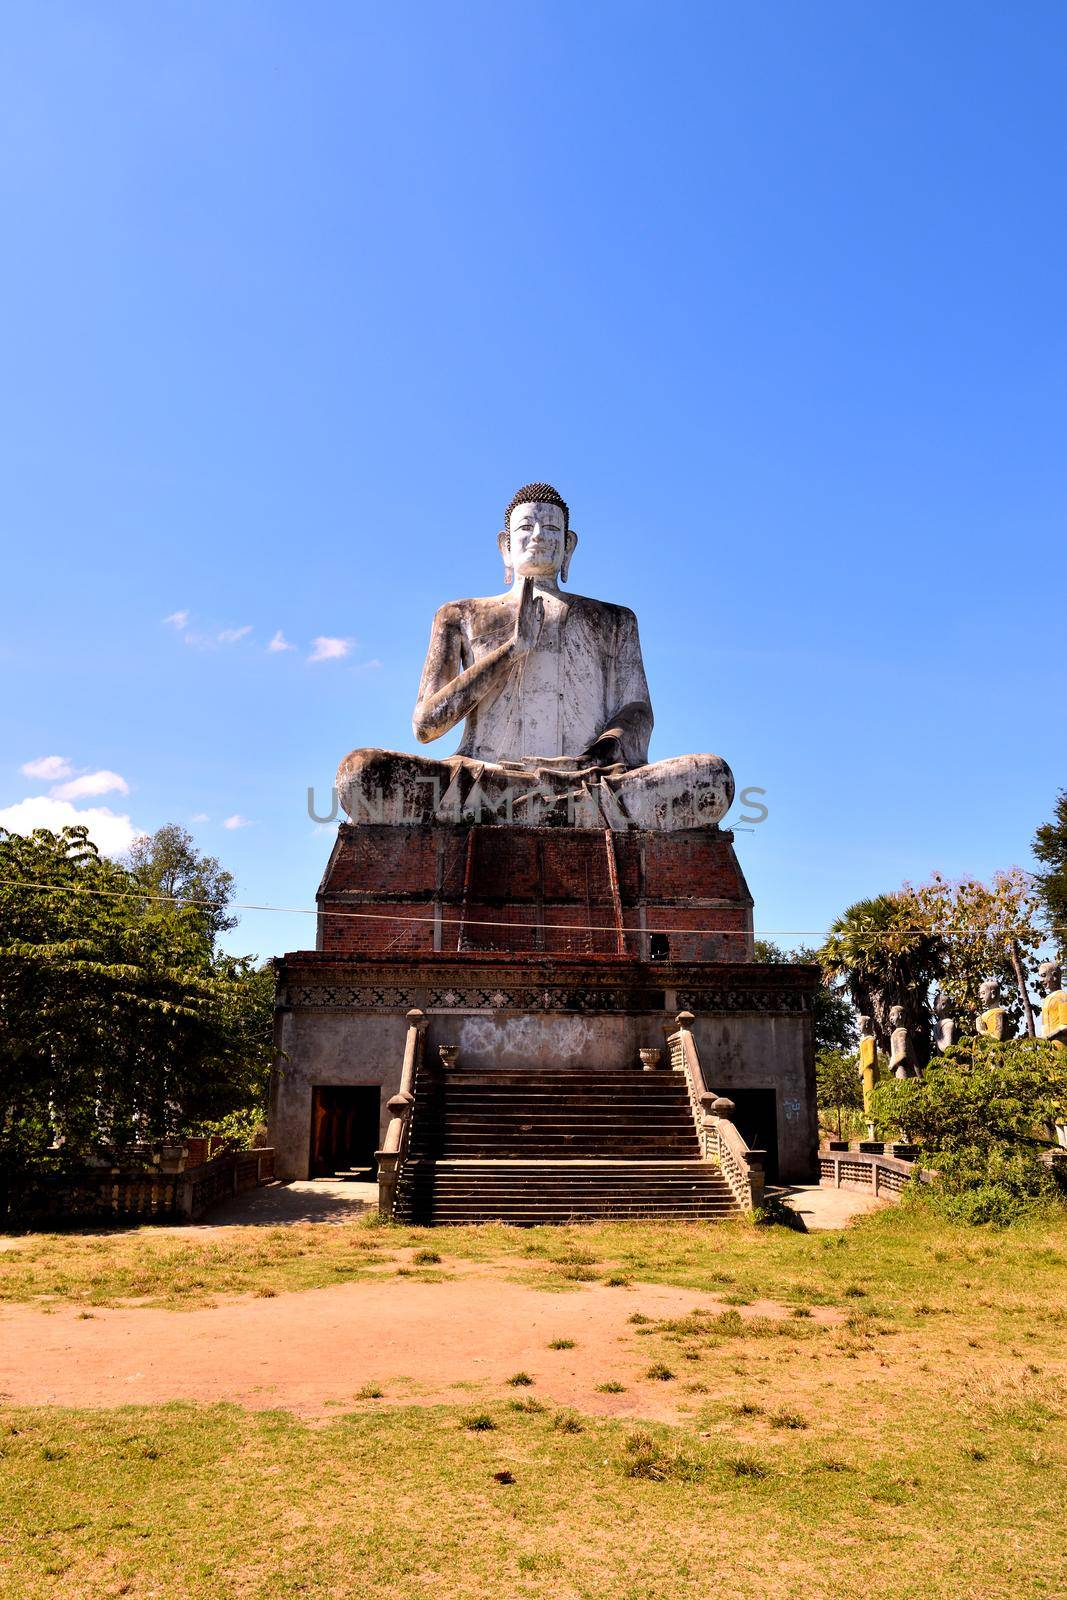 View of the giant Buddha in the Wat Ek Phnom complex, Battambang, Cambodia